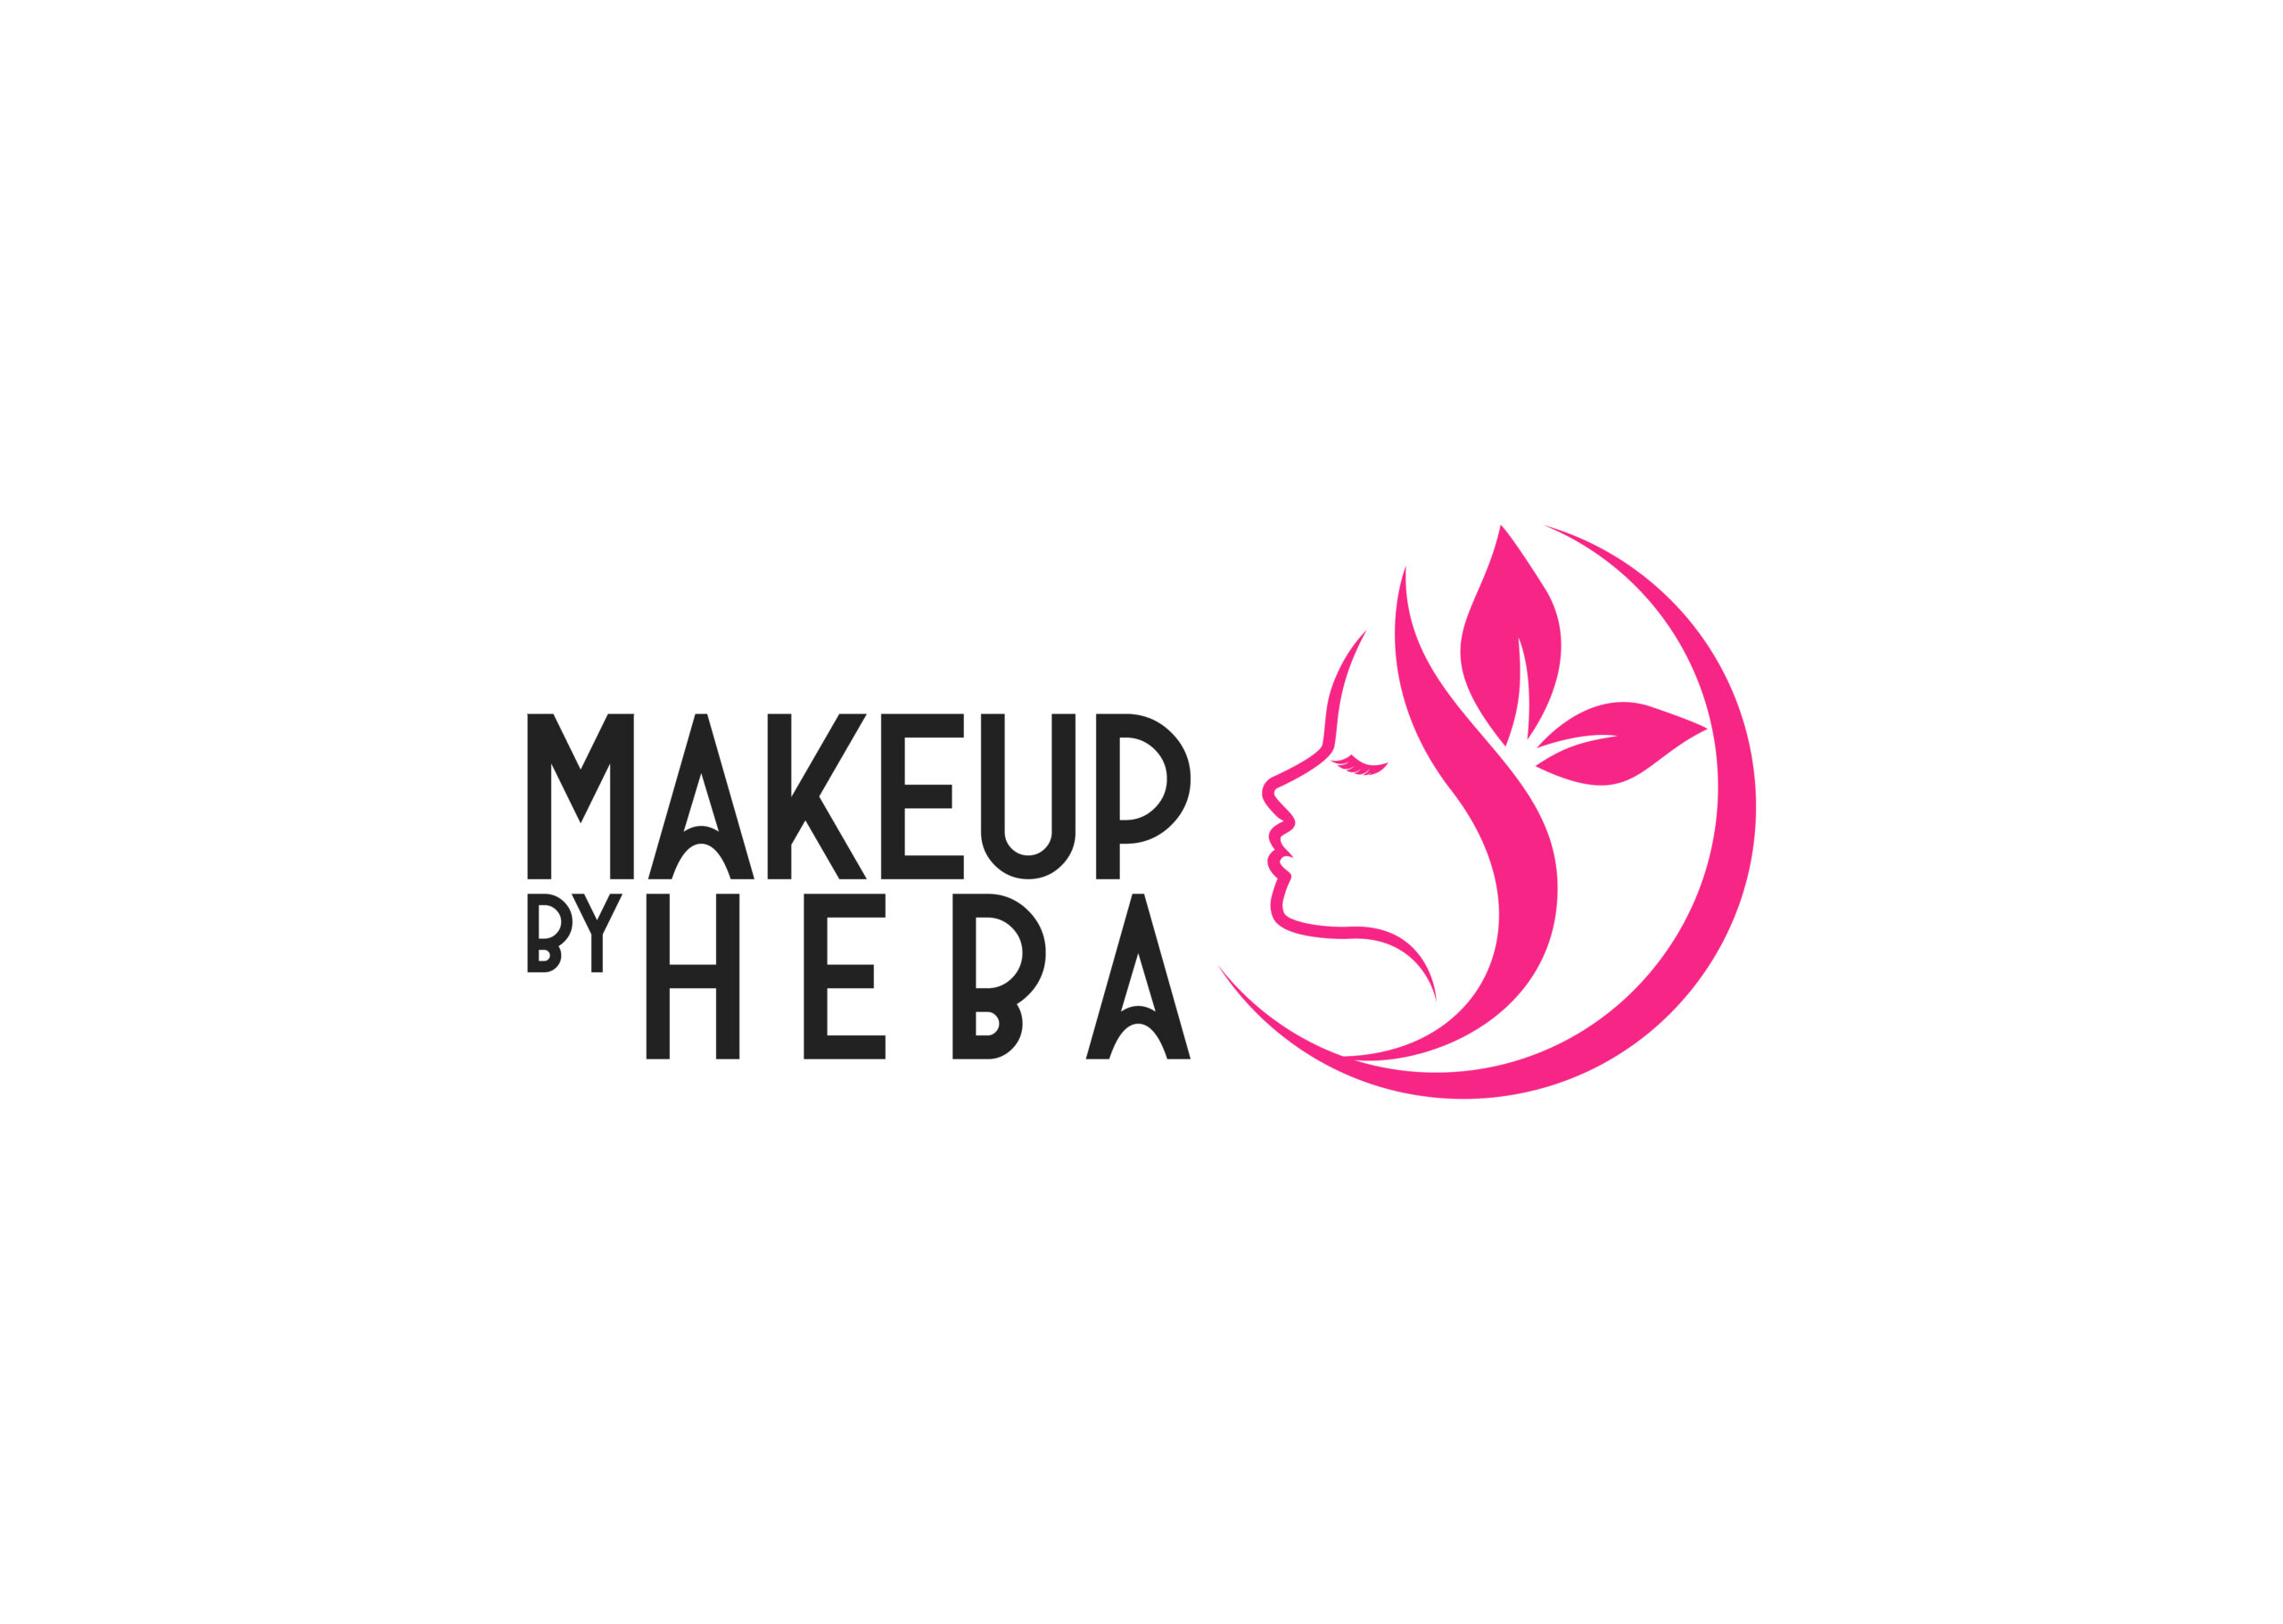 Heba Beauty Salon